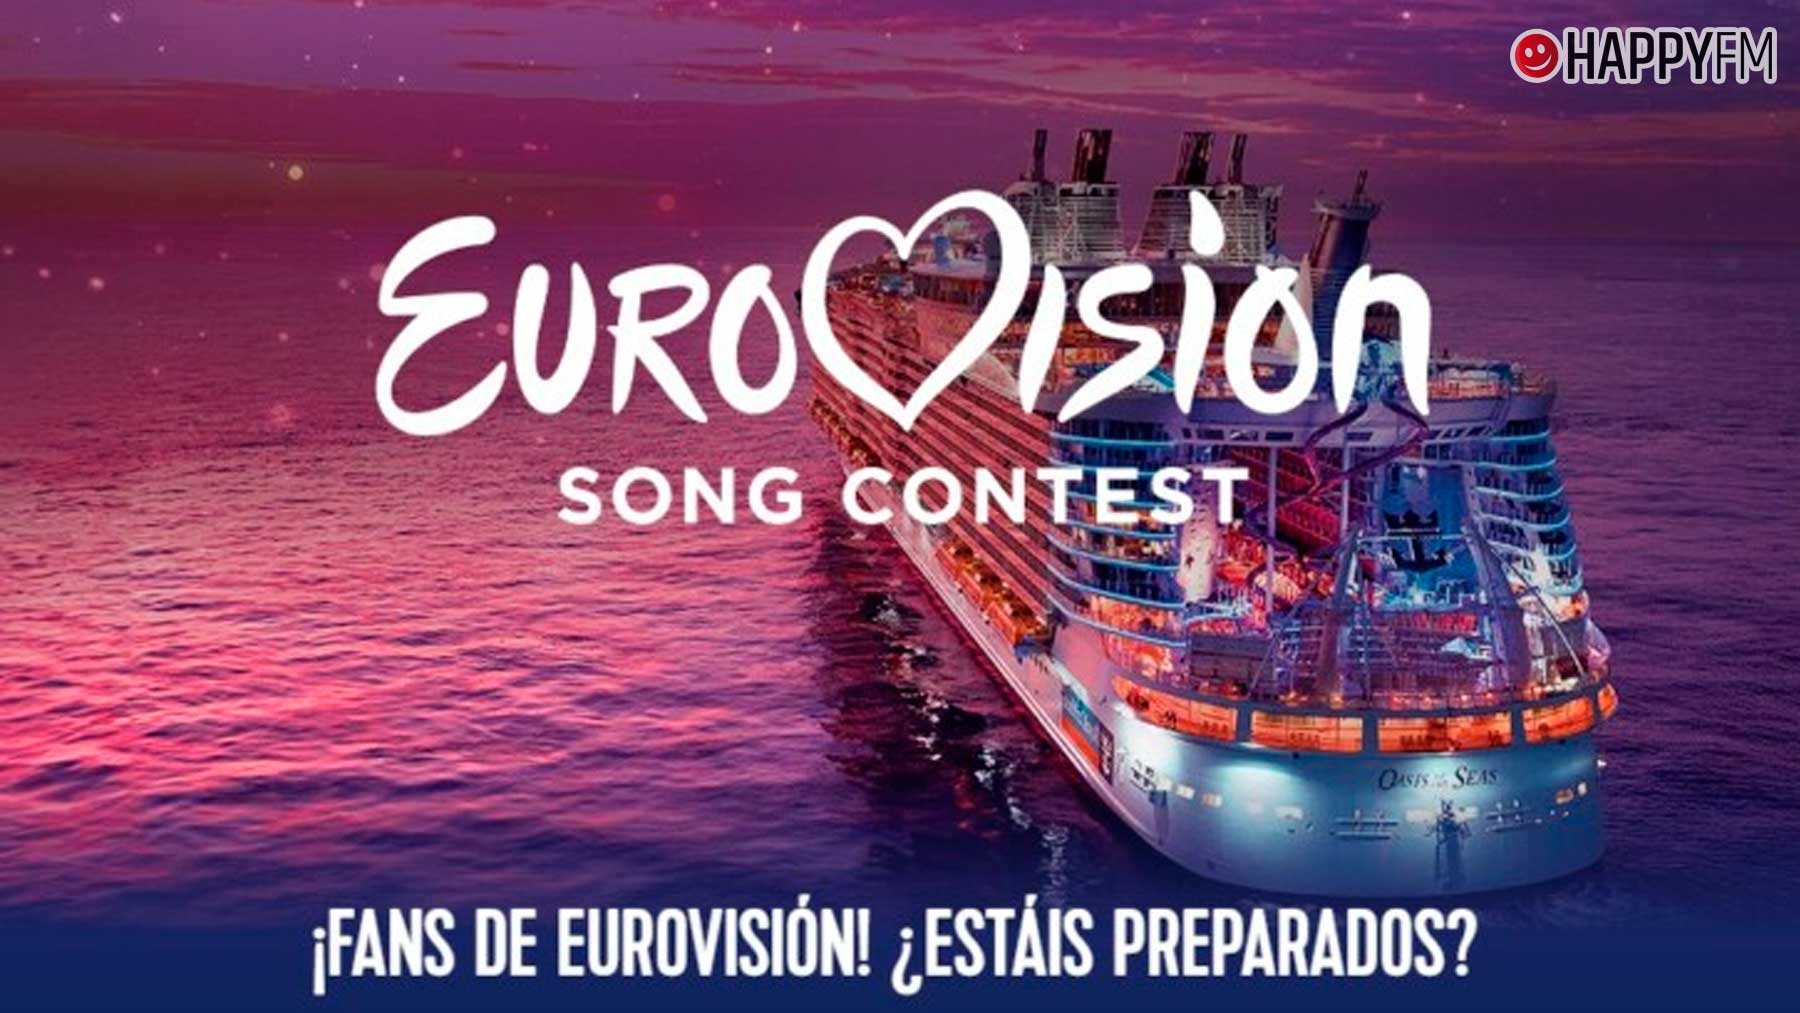 Una naviera lanza los cruceros temáticos sobre Eurovisión: precios y cómo reservar.